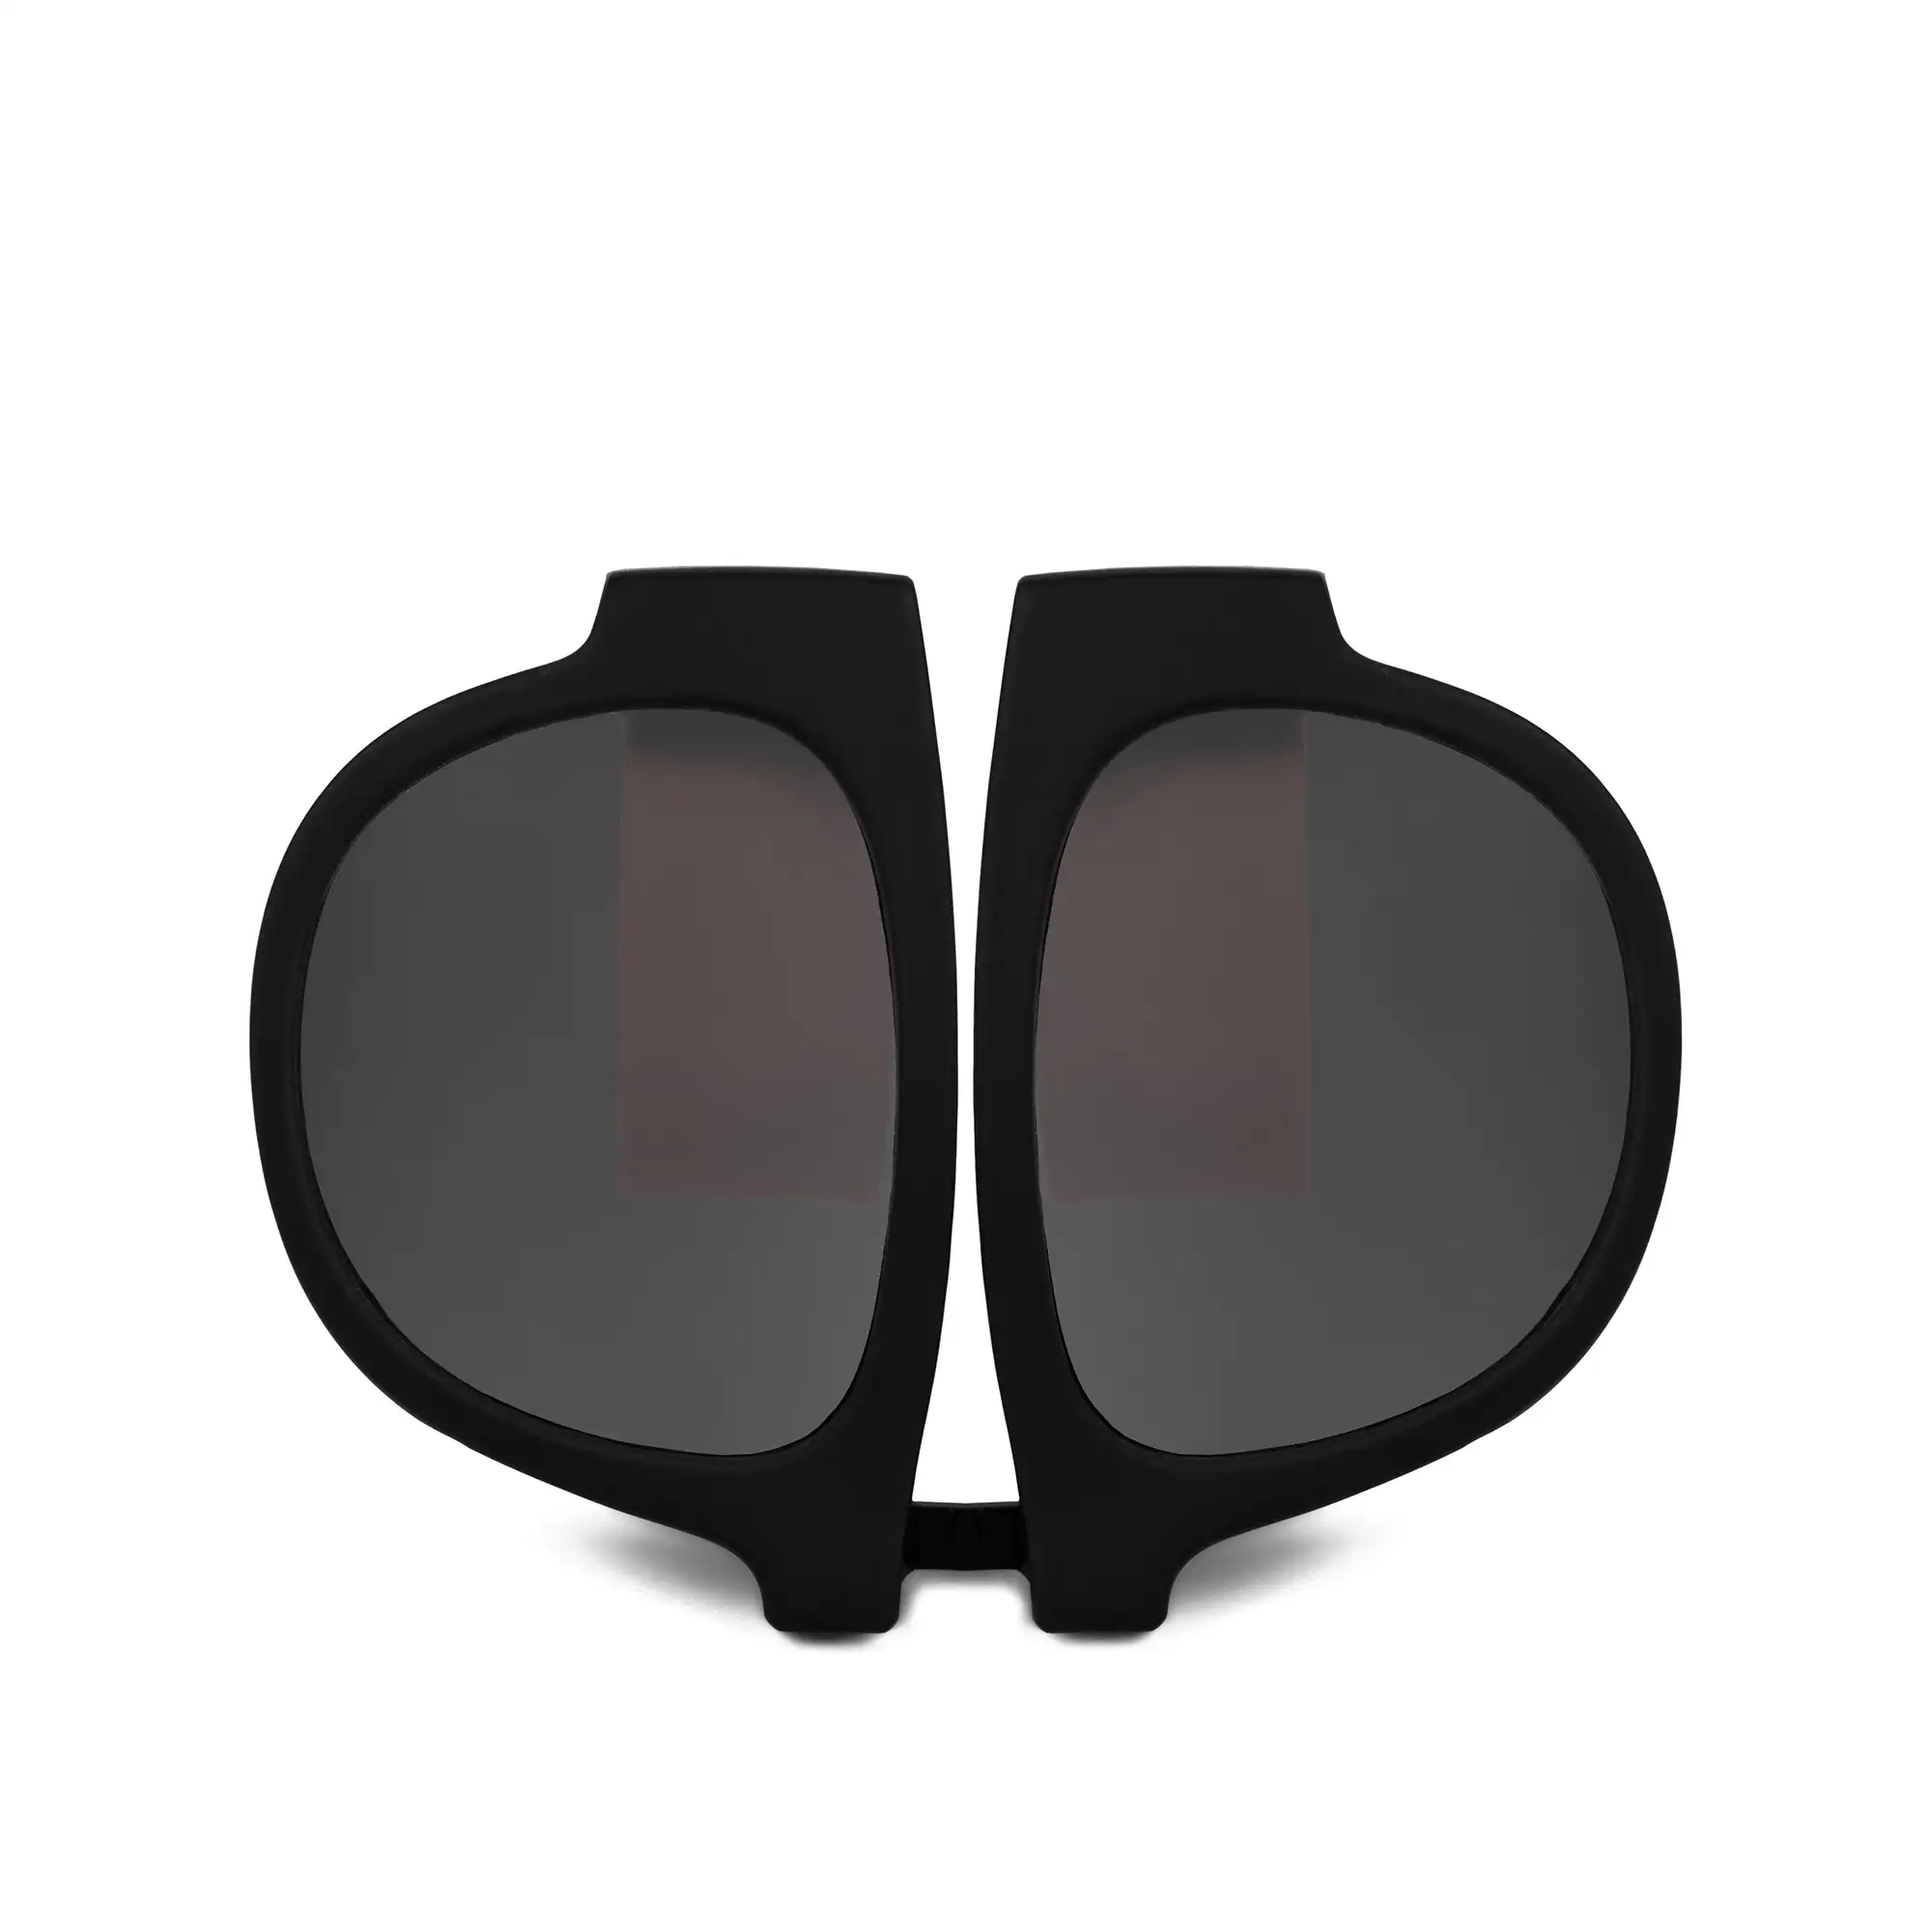 Gafas de sol deportivas, plegables y enrollables UV400